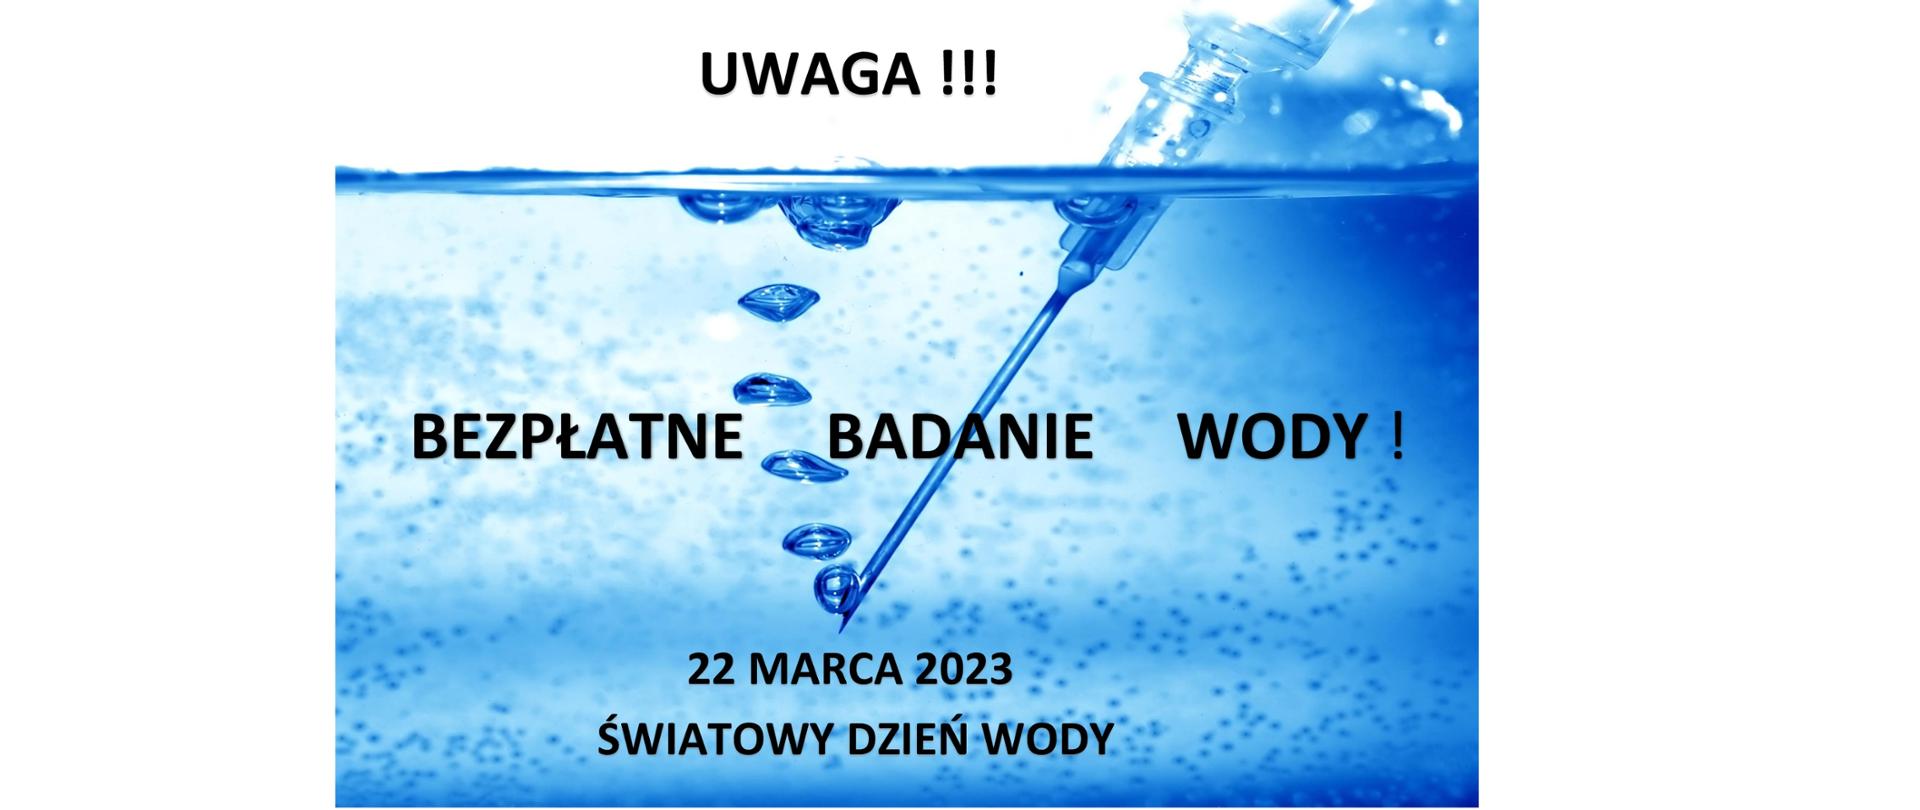 Grafika przedstawia strzykawkę zanurzoną w wodzie. Grafika ma kolory niebieskie. Widnieje na niej komunikat: UWAGA!!! DARMOWE BADANIE WODY! 22 MARCA 2023 śWIATOWY DZIEŃ WODY